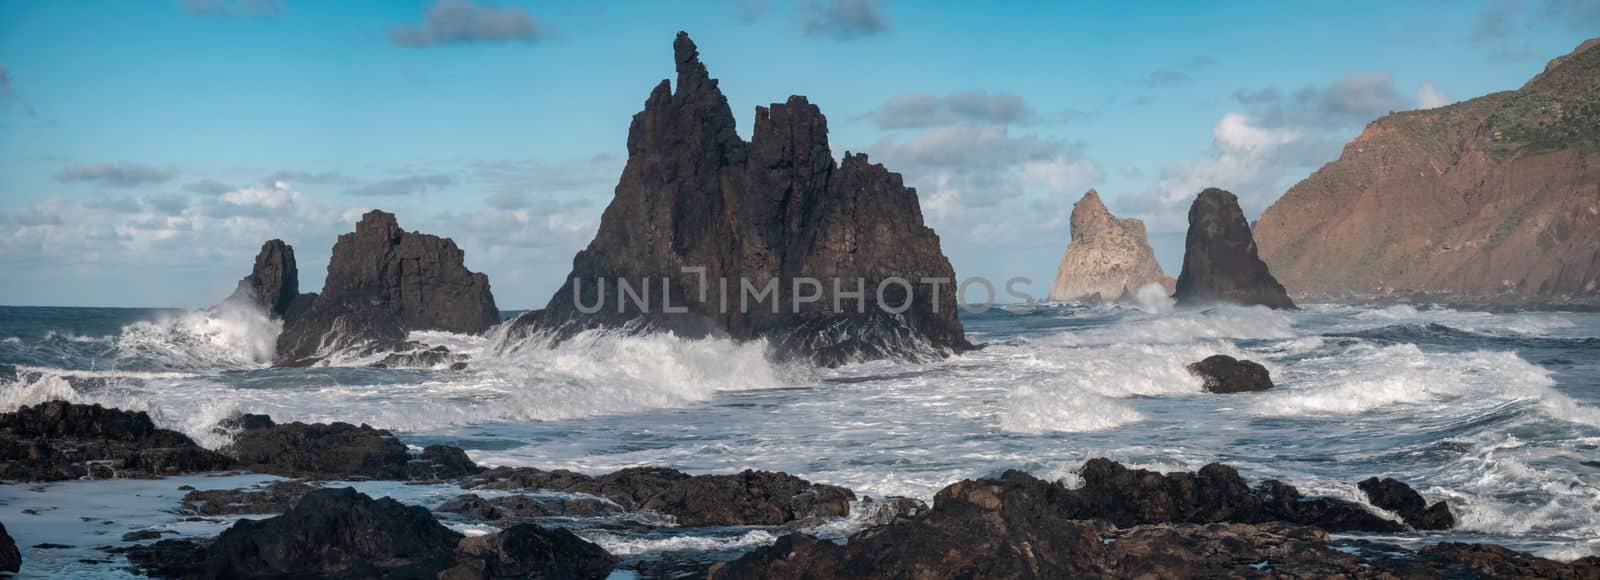 Rough coastline of Anaga in Tenerife island by FerradalFCG